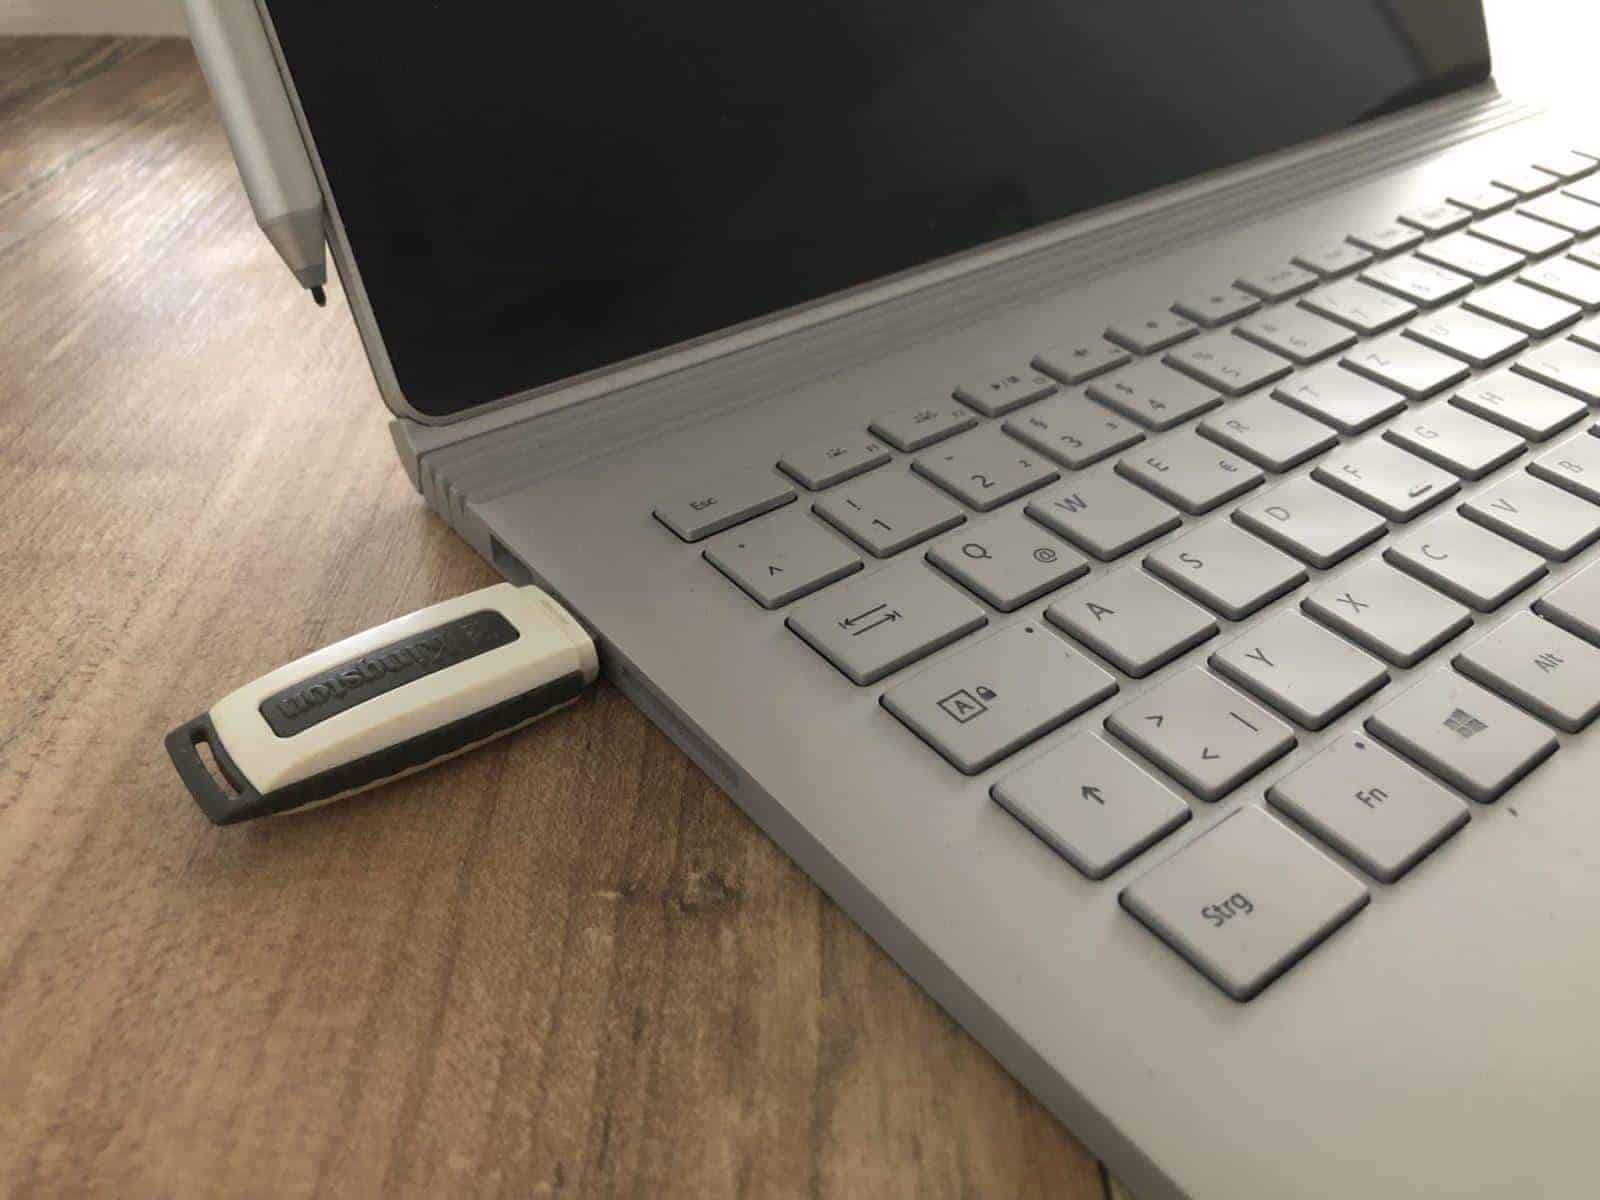 Bild eines Laptops mit angeschlossenem USB Stick